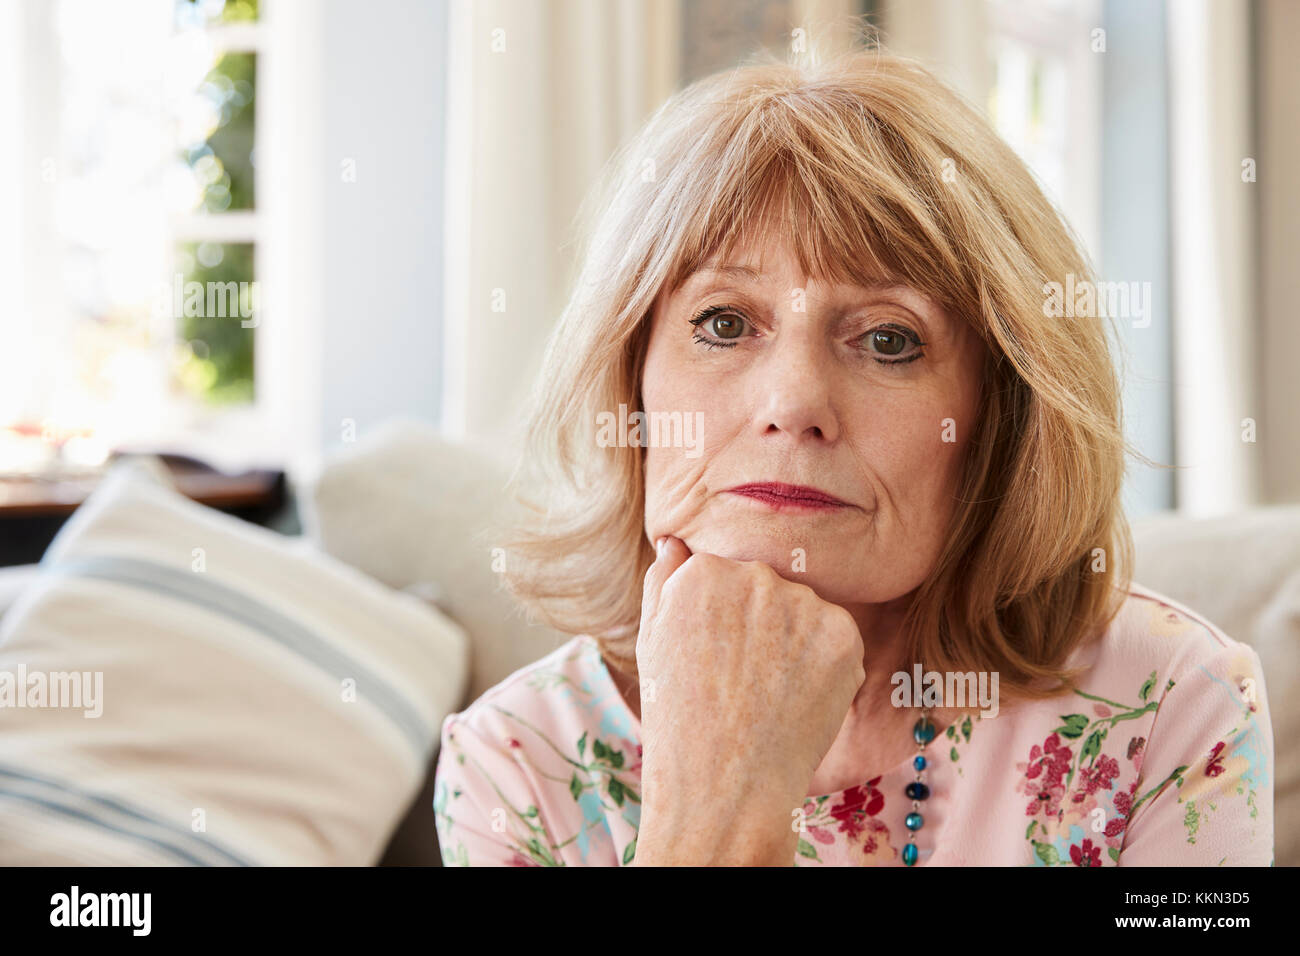 Retrato de mujer de más edad en el sofá sufriendo de depresión Foto de stock